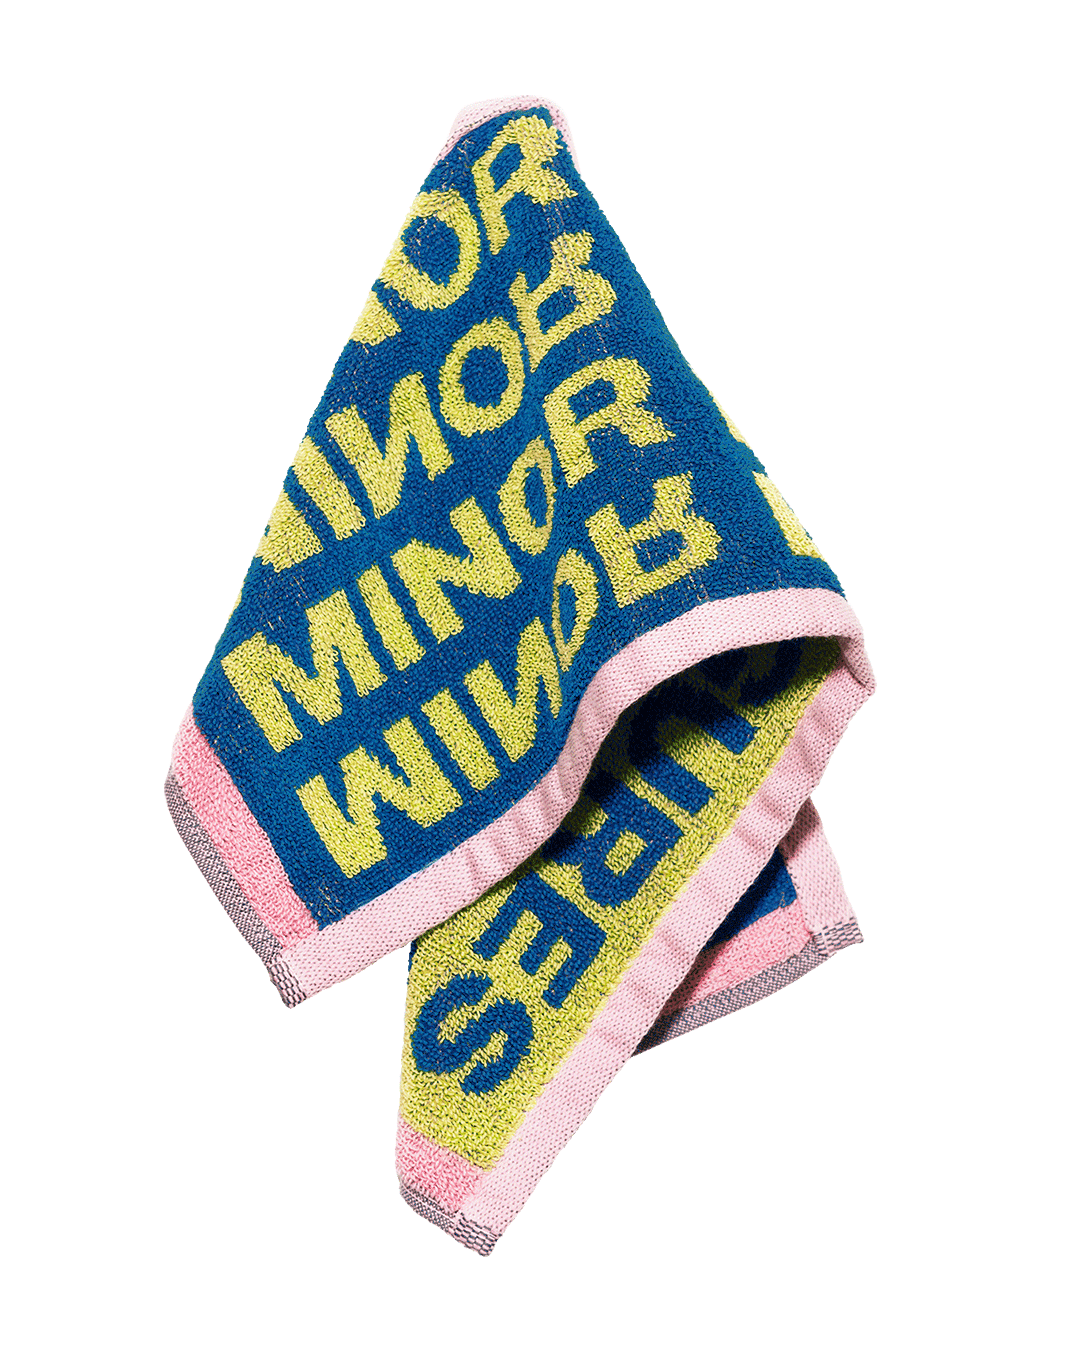 MINOR FIGURES BAR TOWEL 2.0